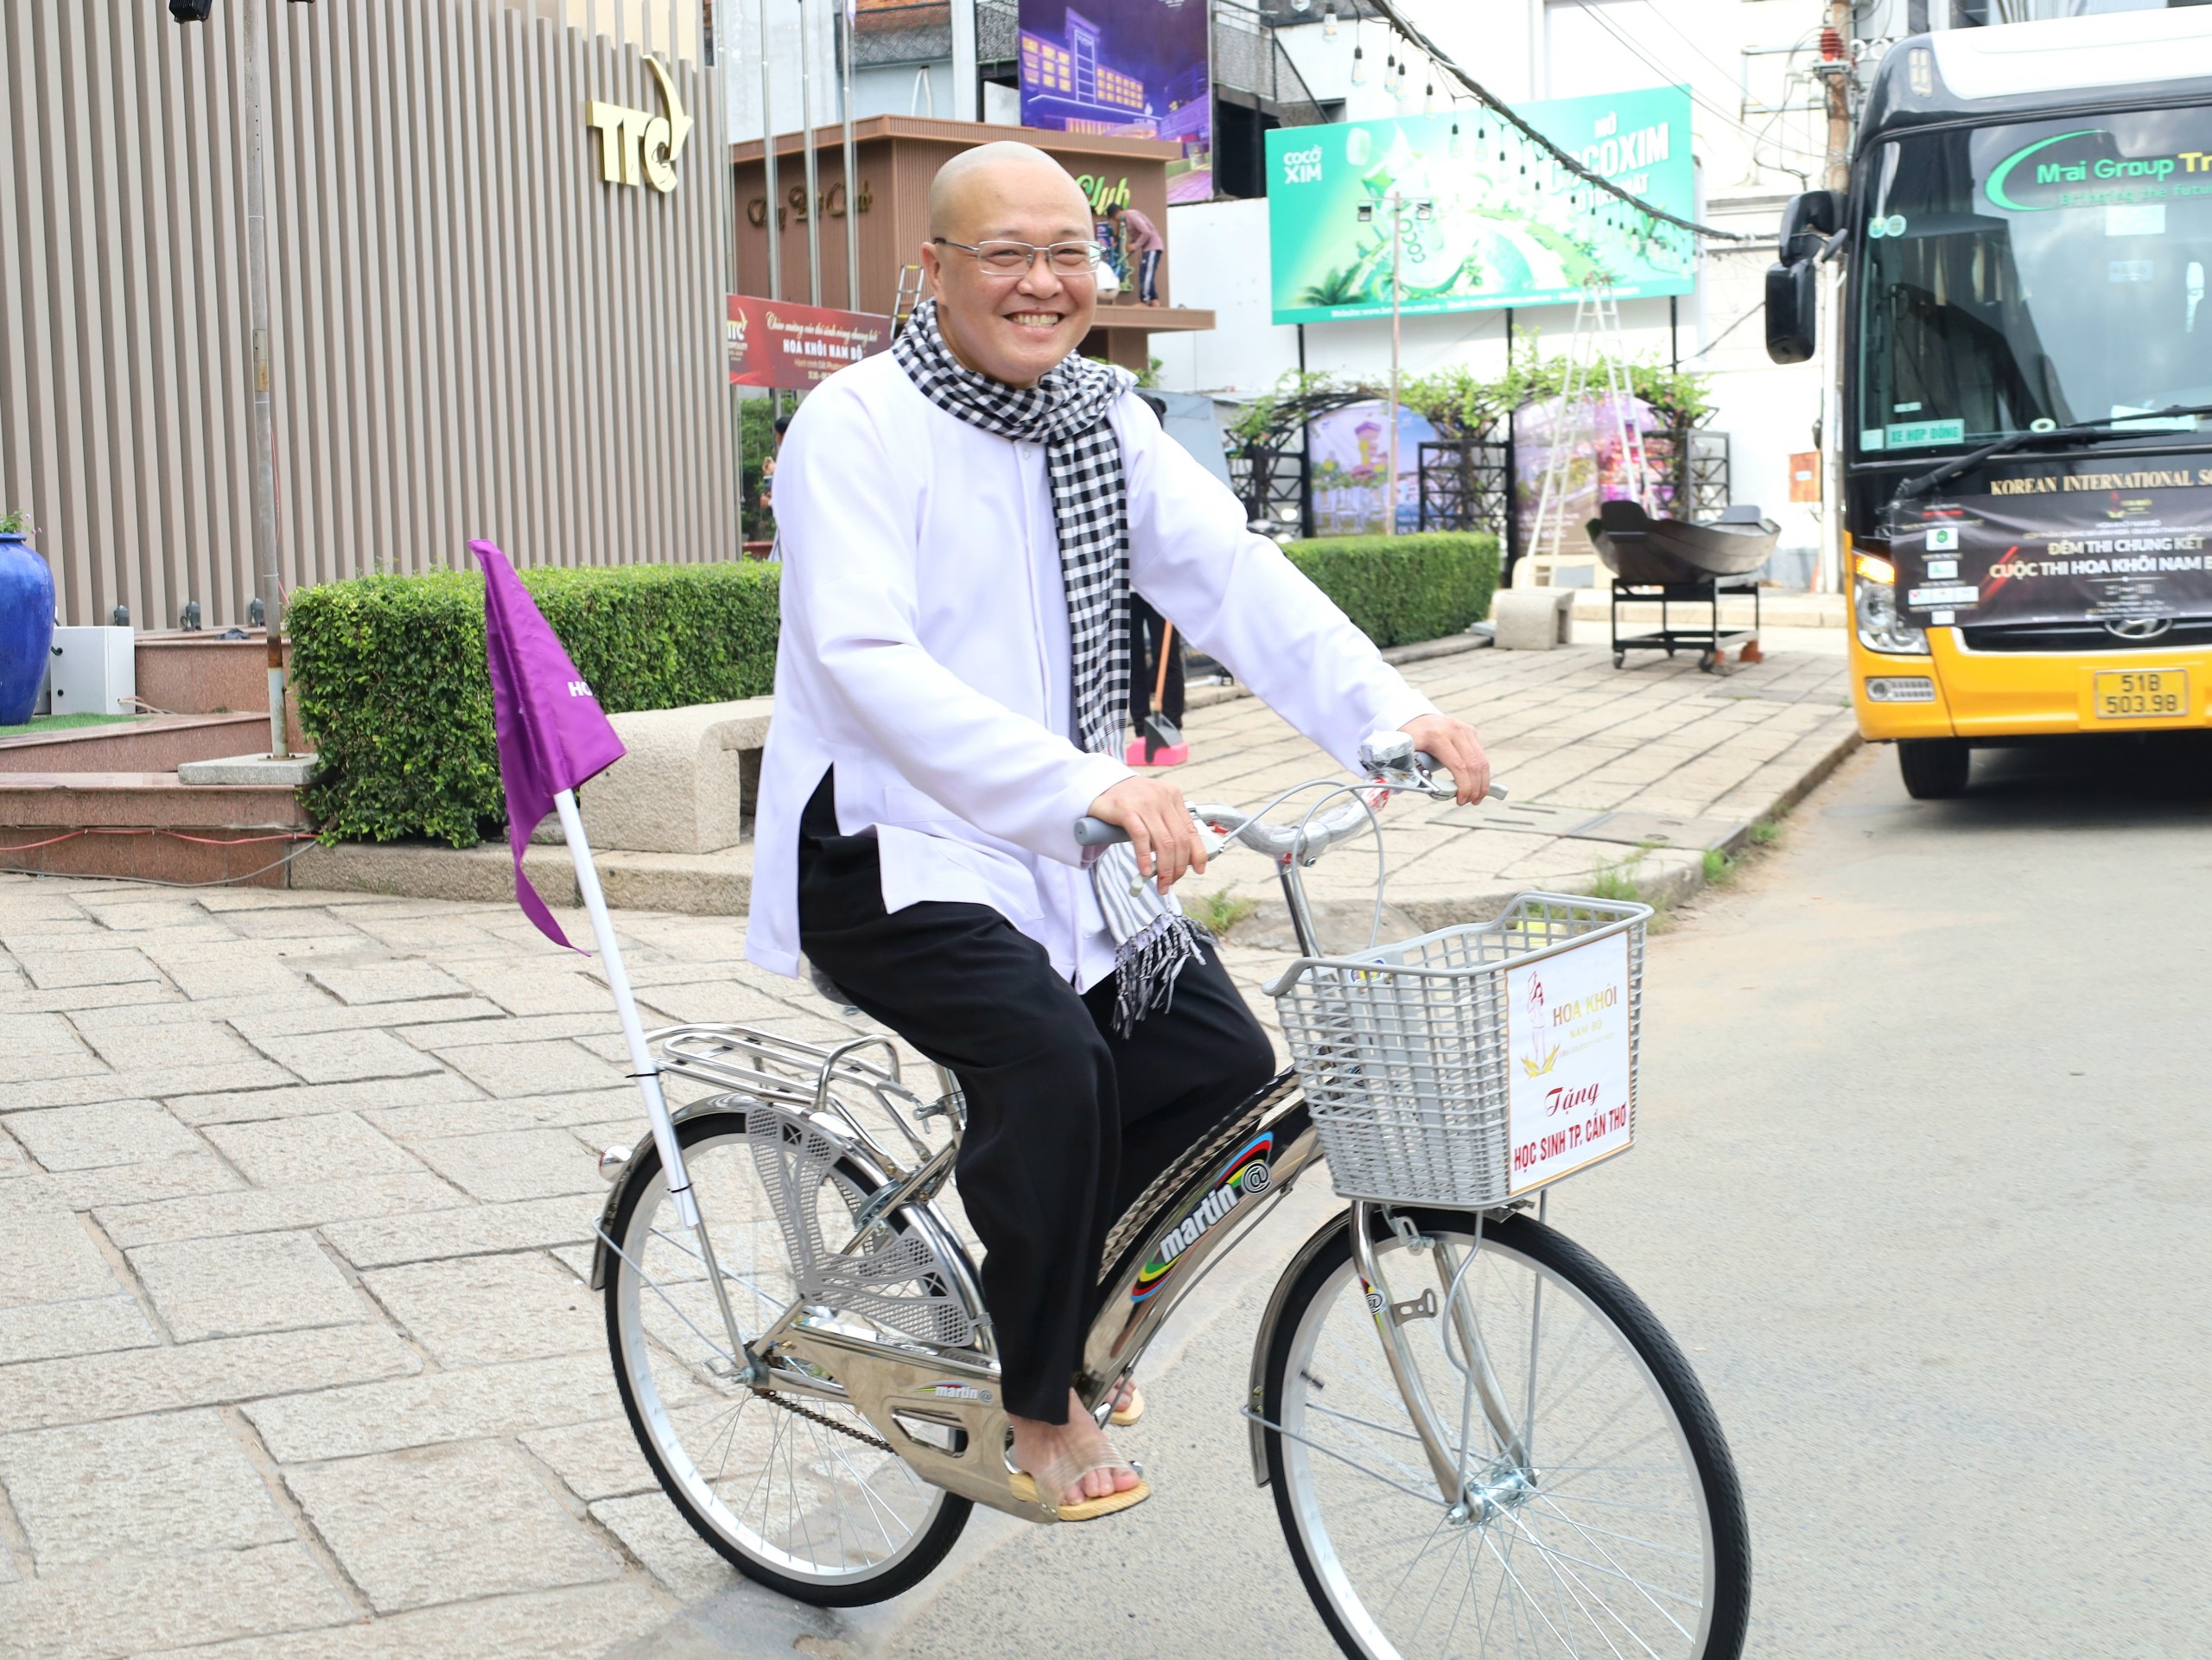 Ông Võ An Nguyên – Giám đốc Công ty cổ phẩn Giải trí Tiếp thị Truyền thông Tân Thành Công, nhà sáng lập “Cuộc thi Hoa khôi Nam Bộ” tham gia chạy xe đạp cùng các thí sinh.